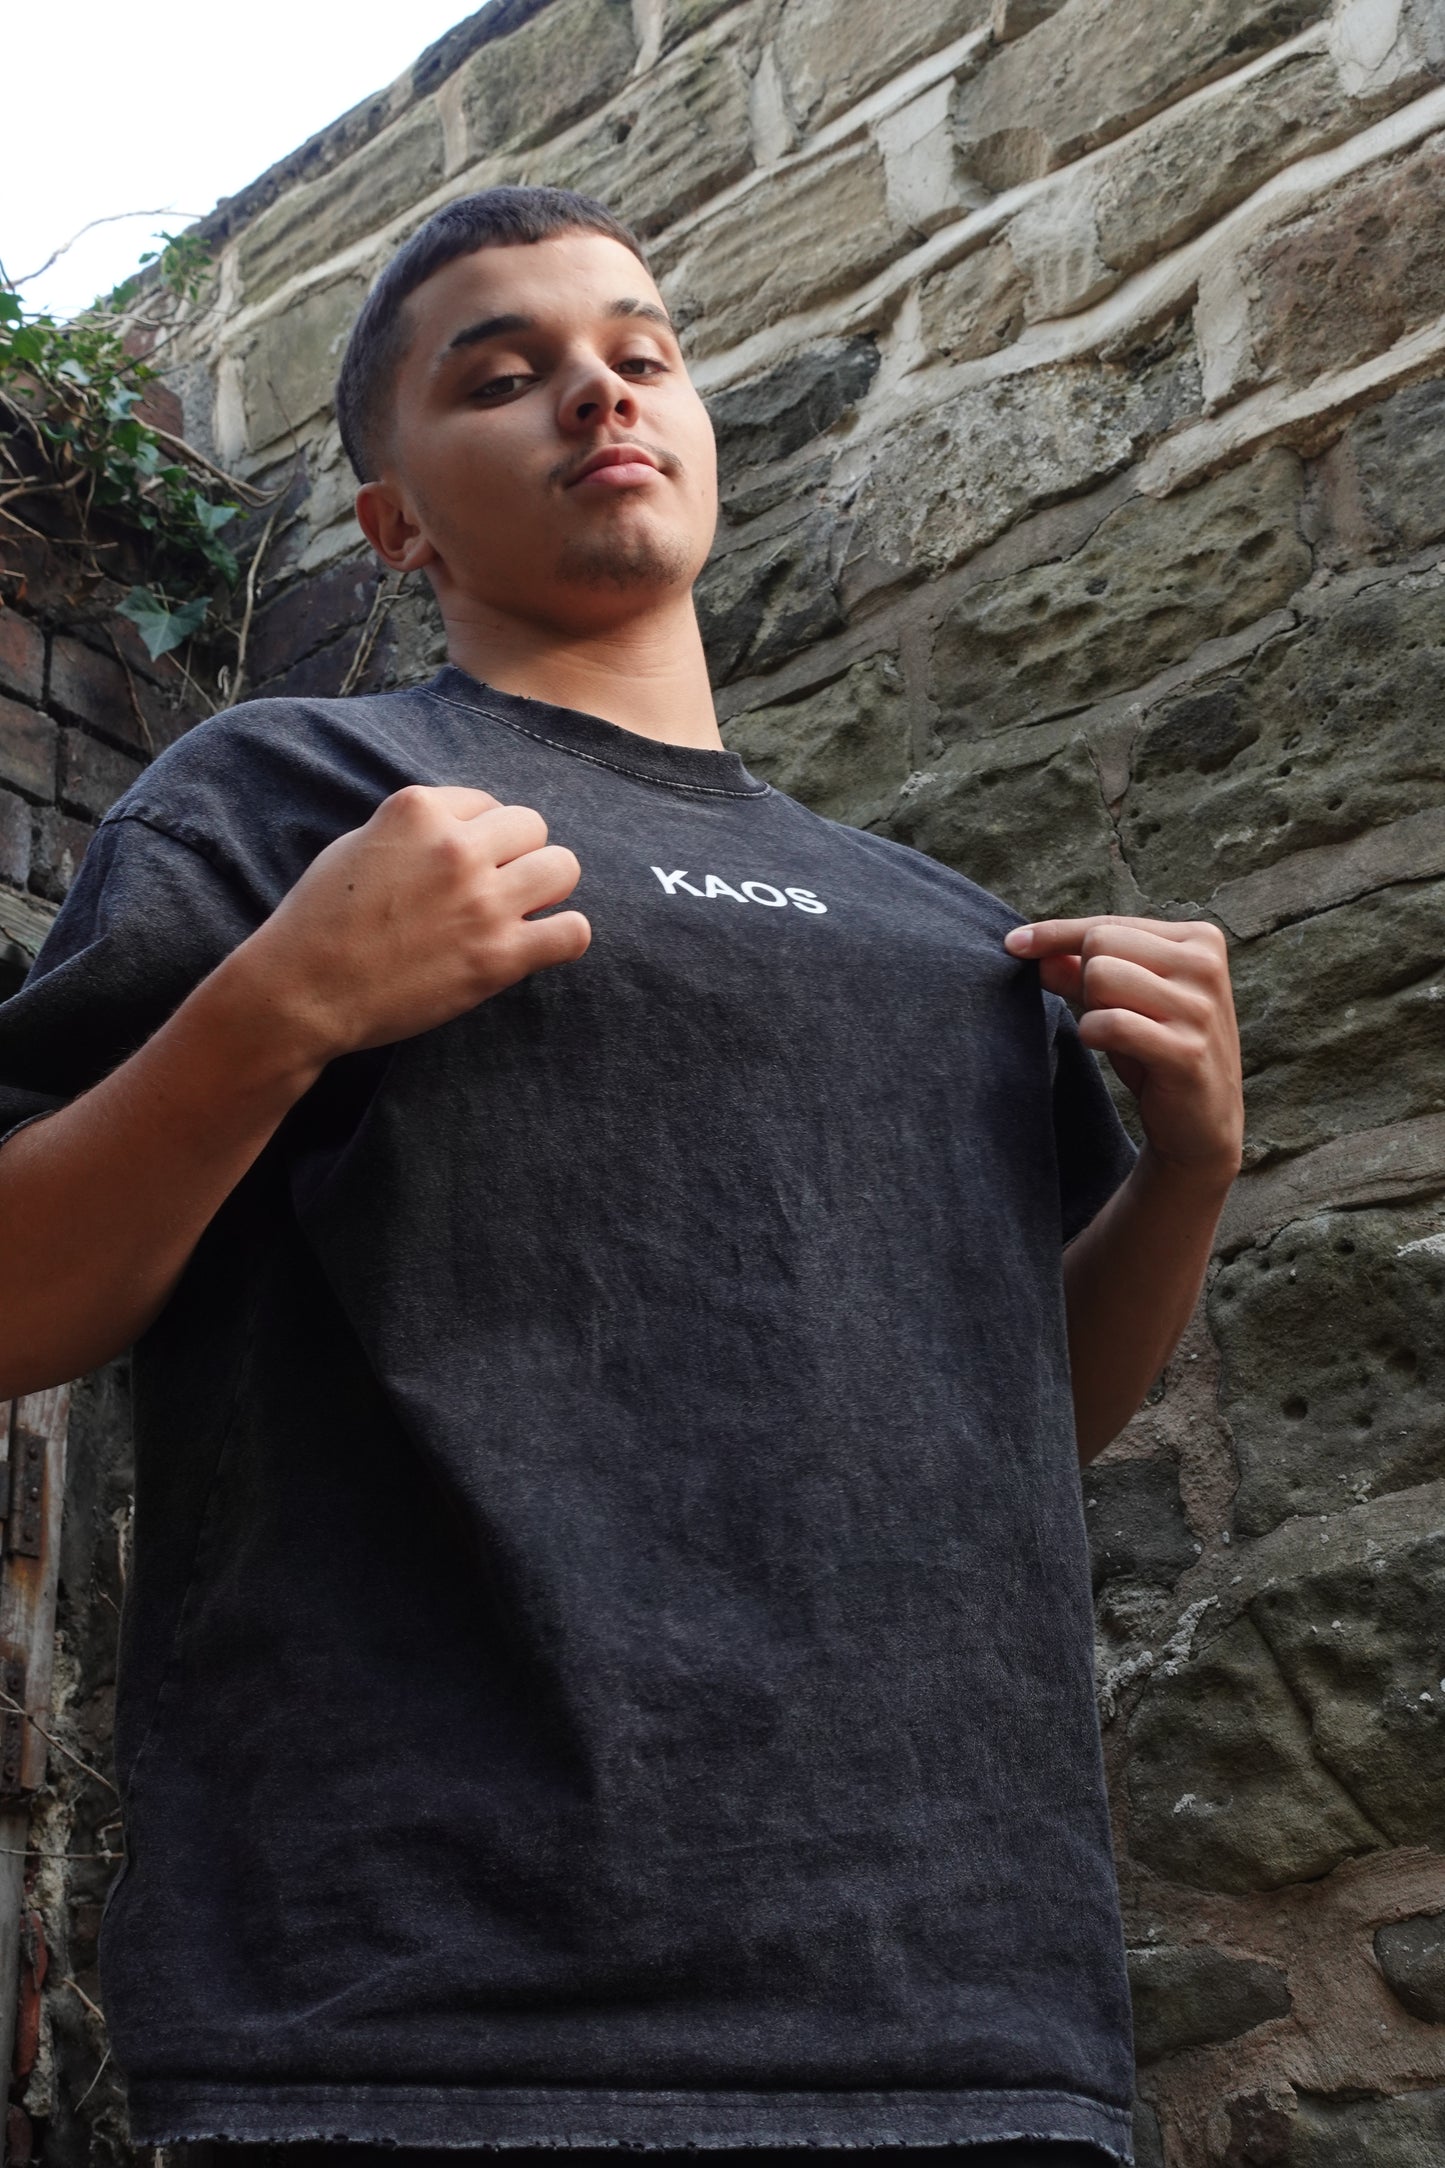 KAOS Oversized T-shirt